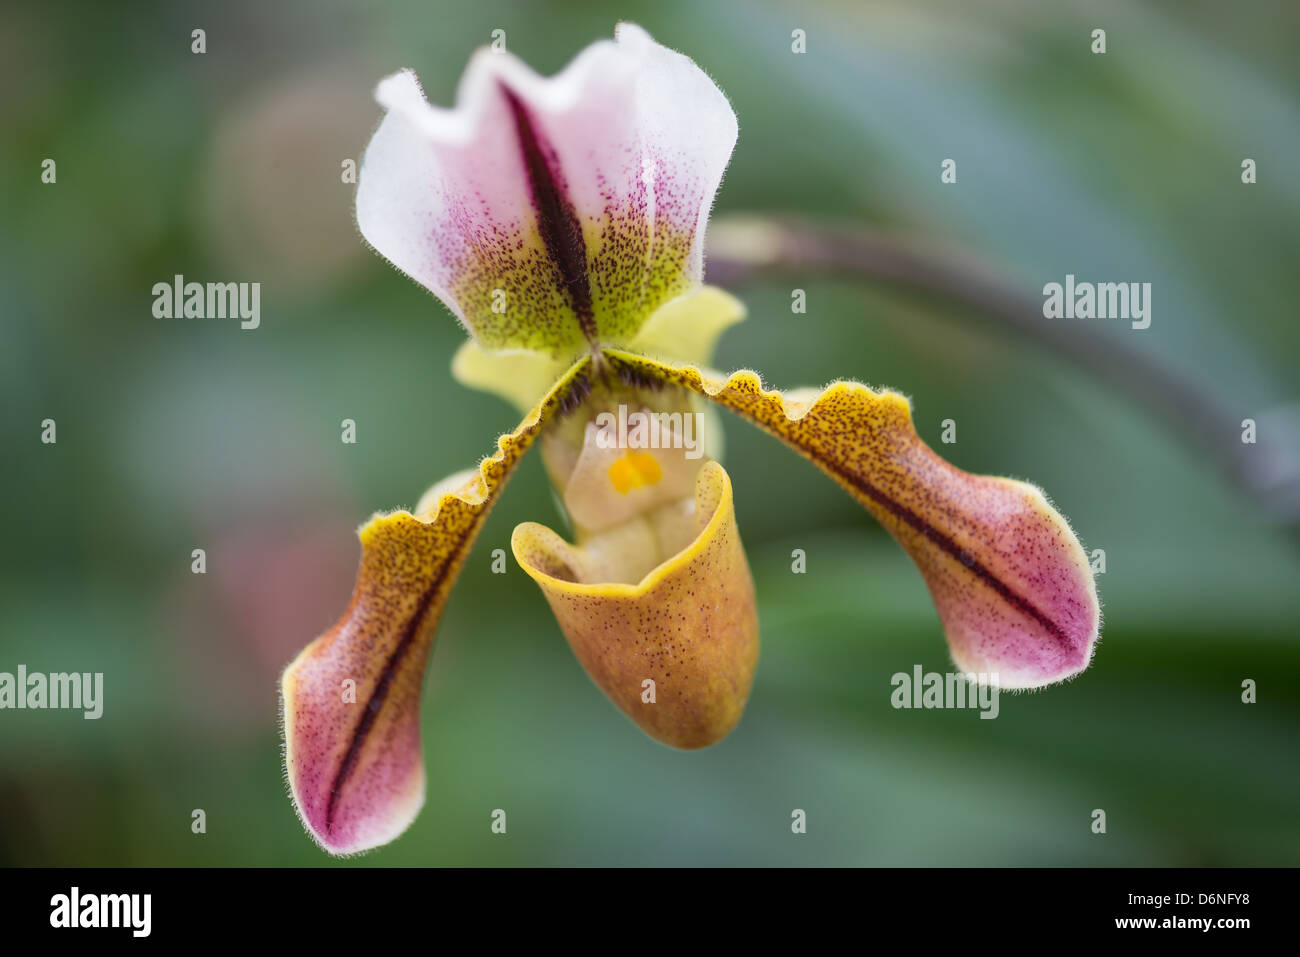 Cattleya orchidées en fleur au Lincoln Park Conservatory. Banque D'Images